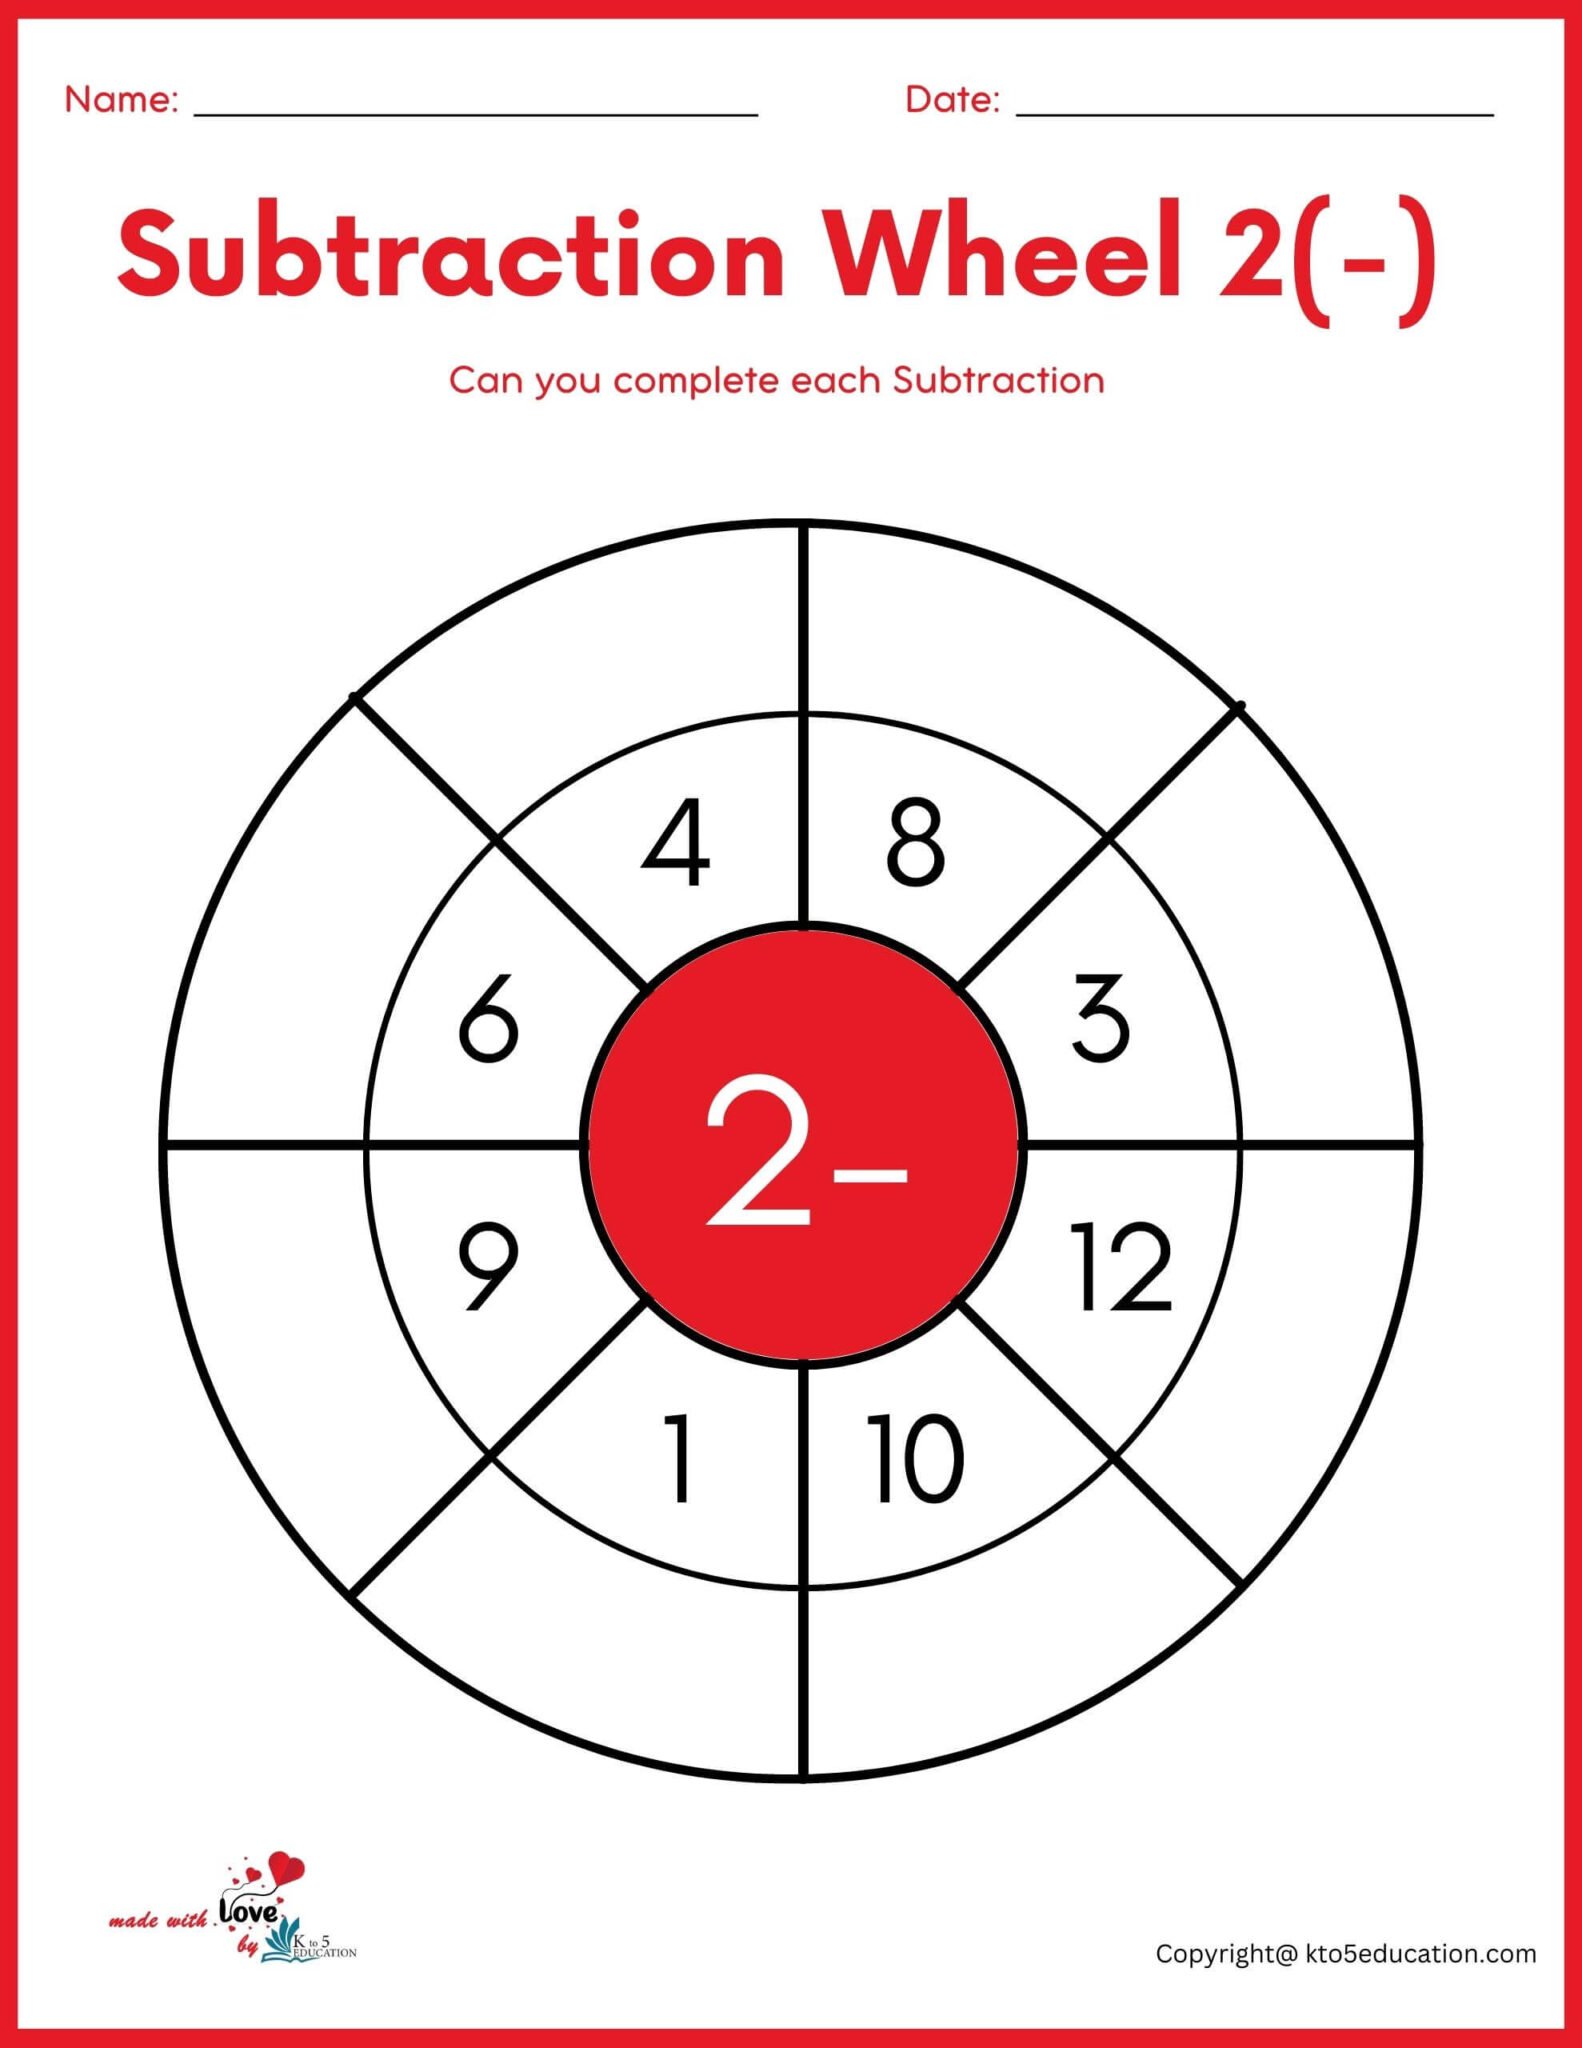 subtraction-wheel-for-online-practice-worksheet-free